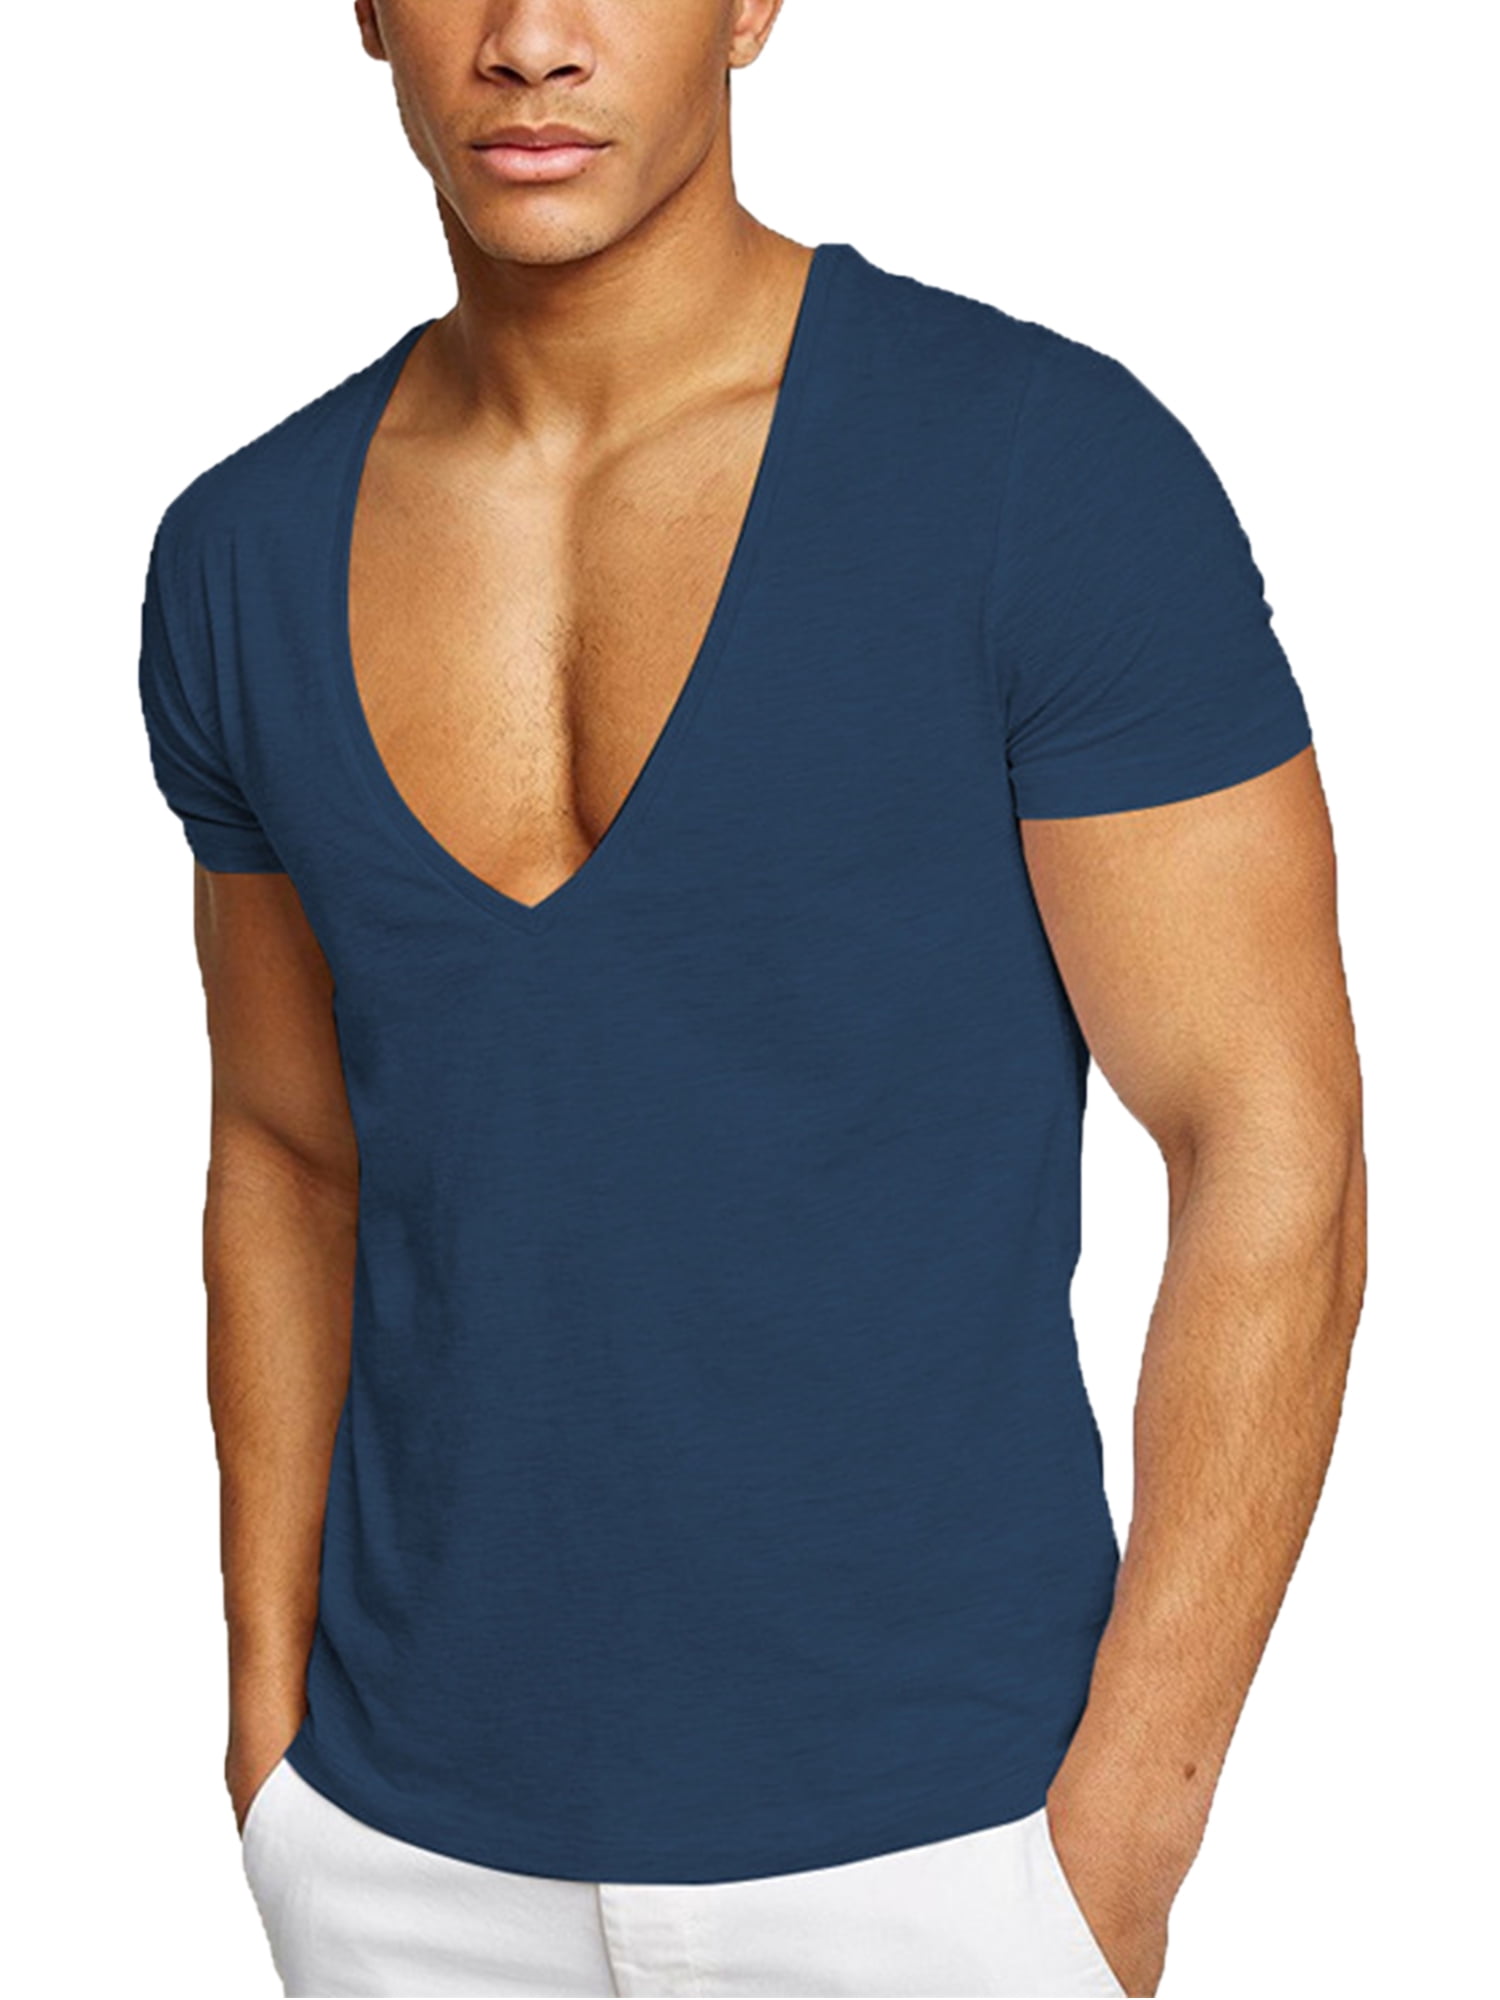 Beiwei Mens Deep V Neck T Shirts Slim Fit Summer Basic Tee Shirt